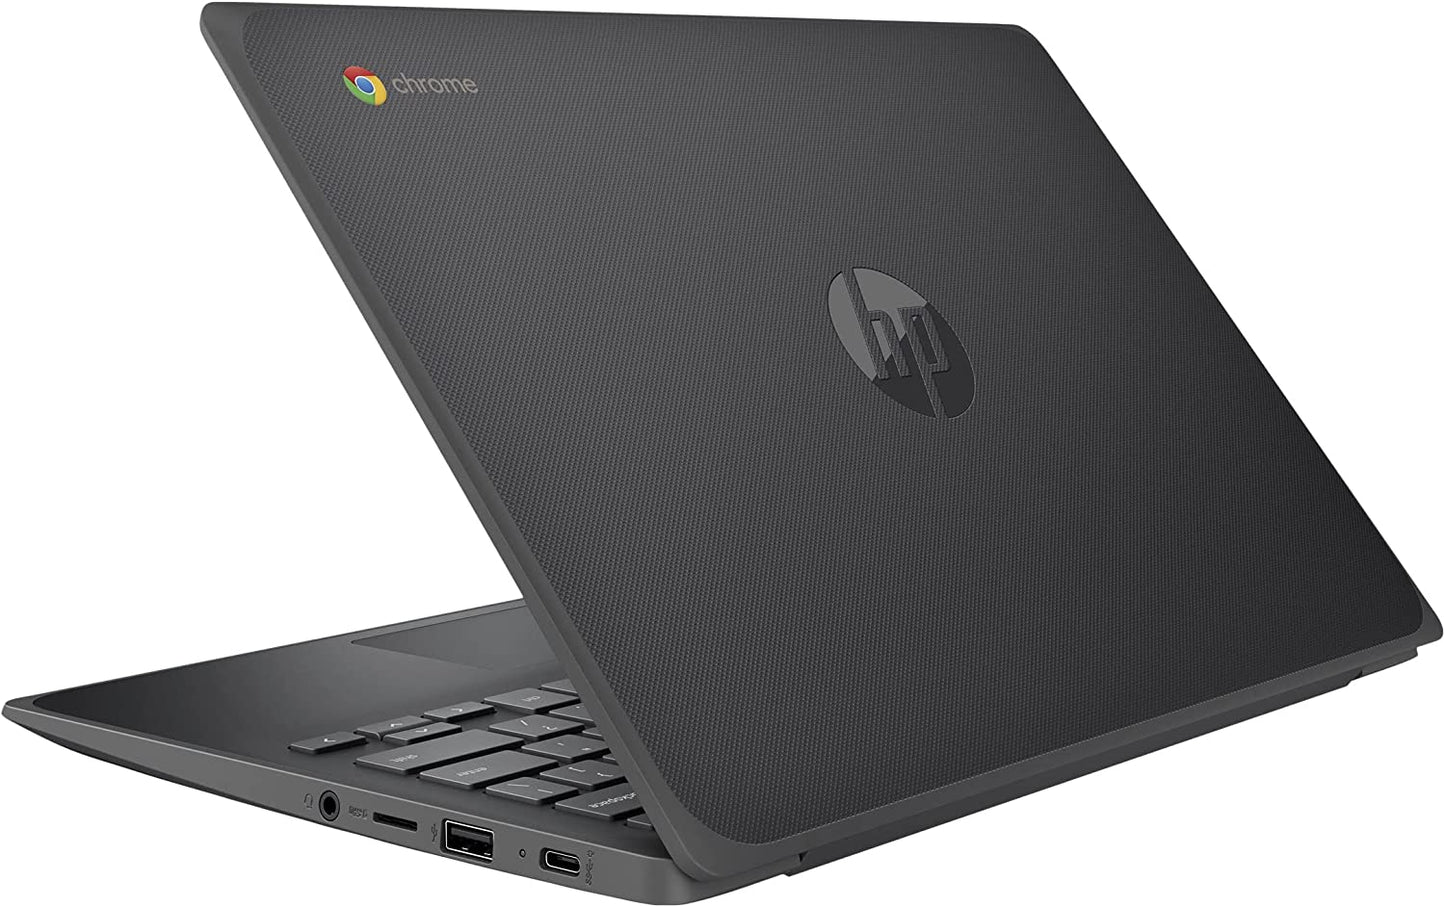 HP Chromebook 11 - Computadora portátil de 11.6 pulgadas para negocios o educación, procesador AMD A4-9120C hasta 2.4 GHz, 4 GB DDR4 RAM, 32 GB eMMC